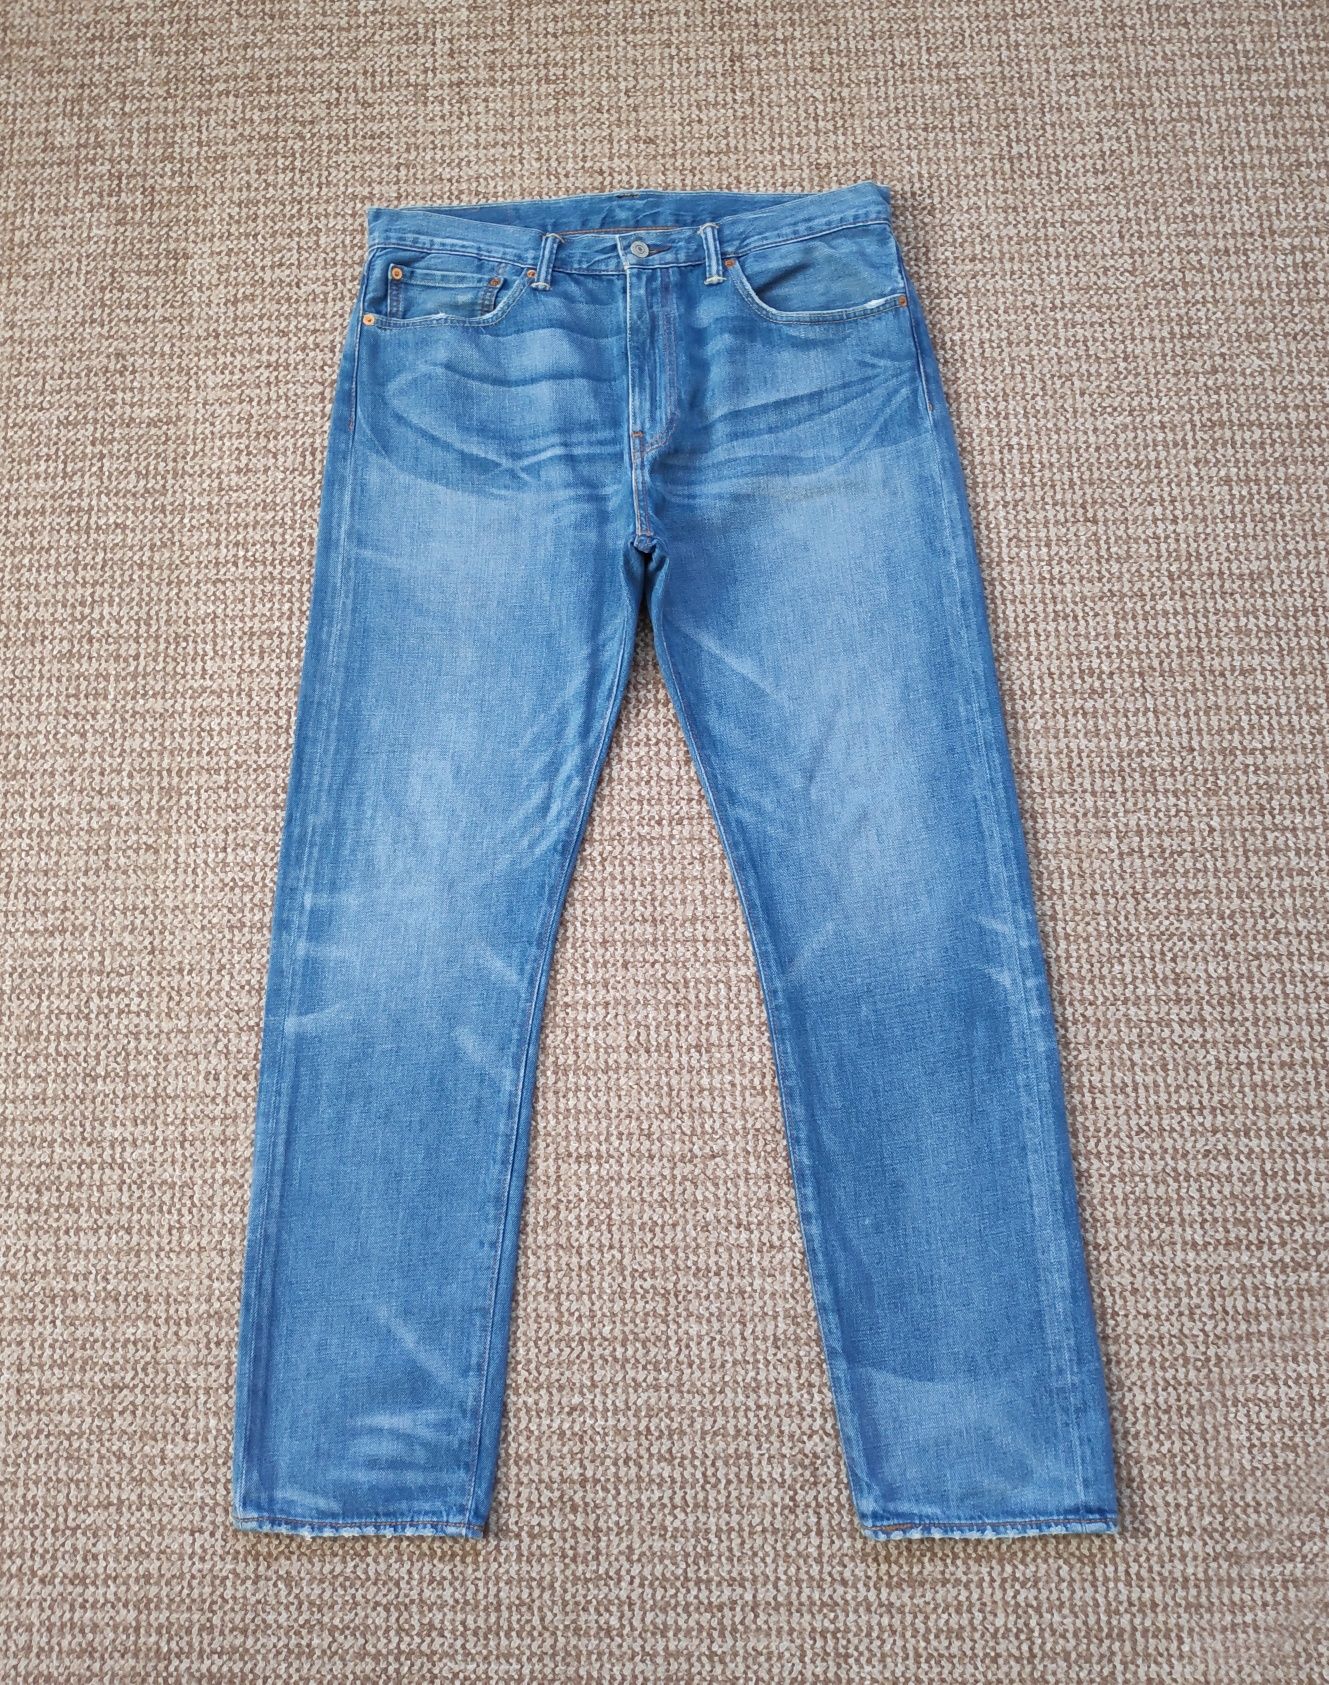 Levi's 508 regular taper fit джинсы оригинал W34 L32 голубые